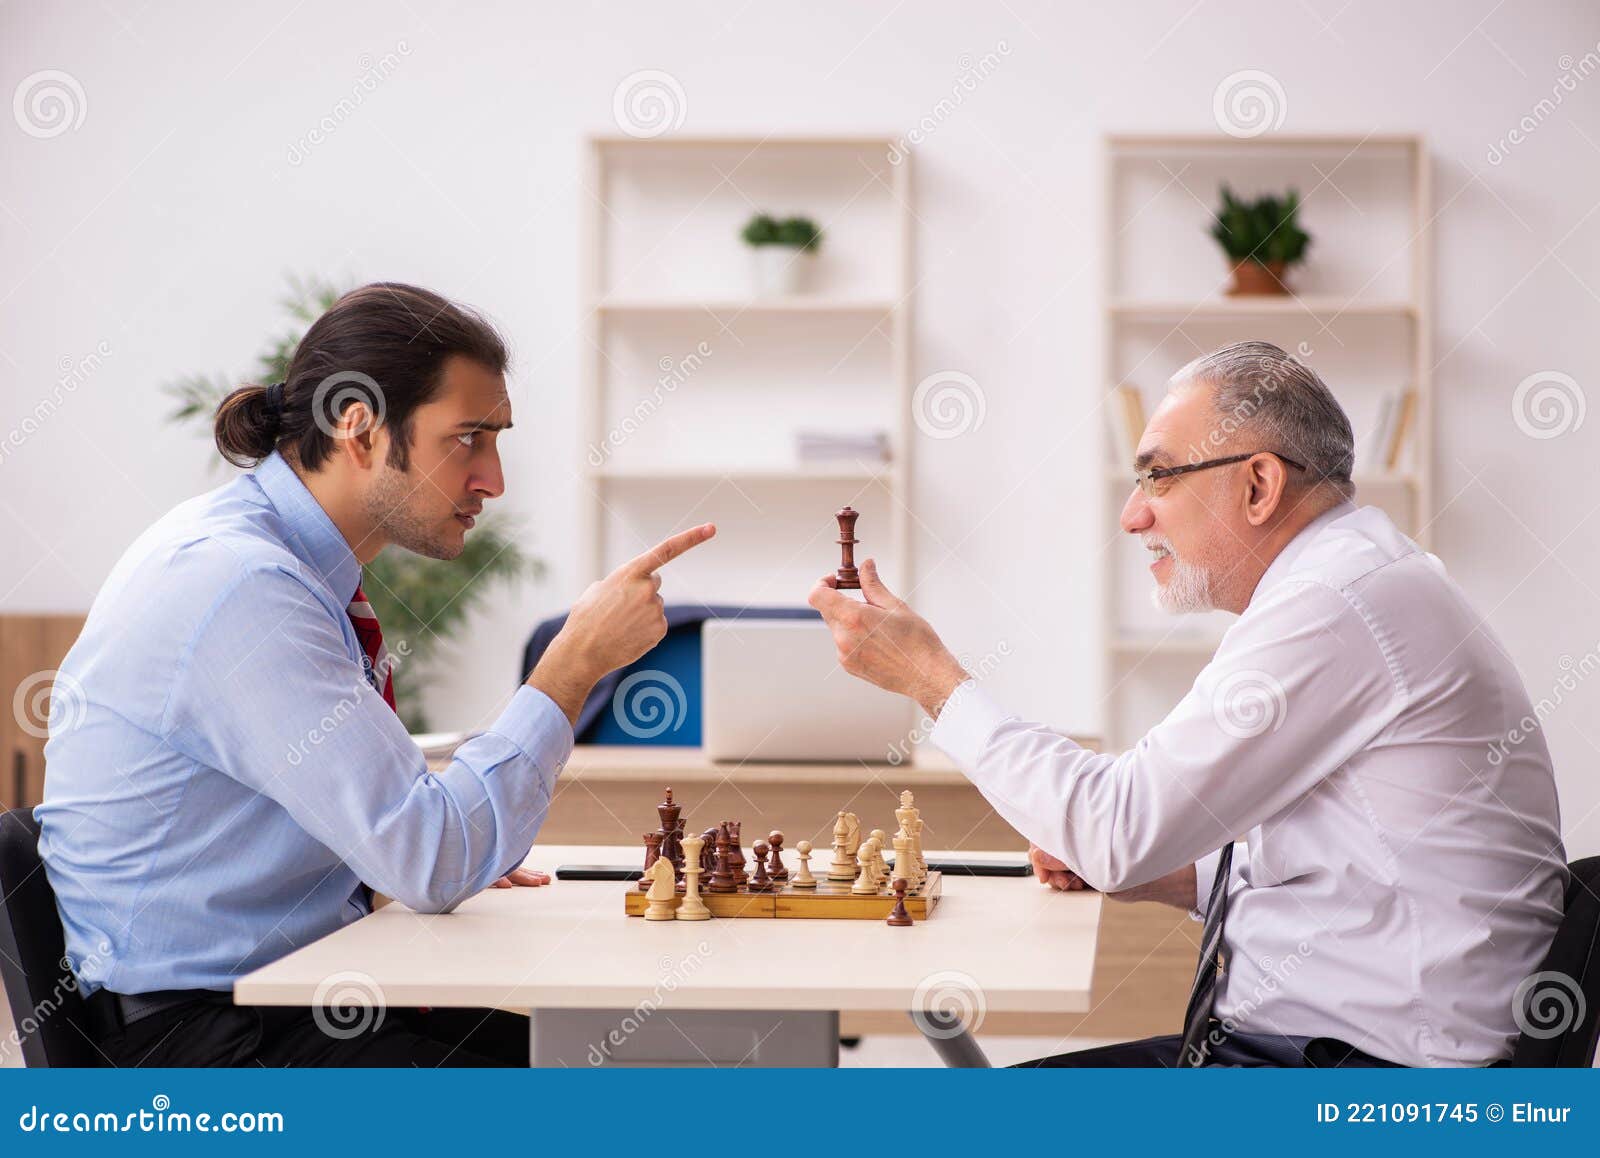 Jogo de Xadrez: Dois homens estão jogando xadrez. Eles já jogaram